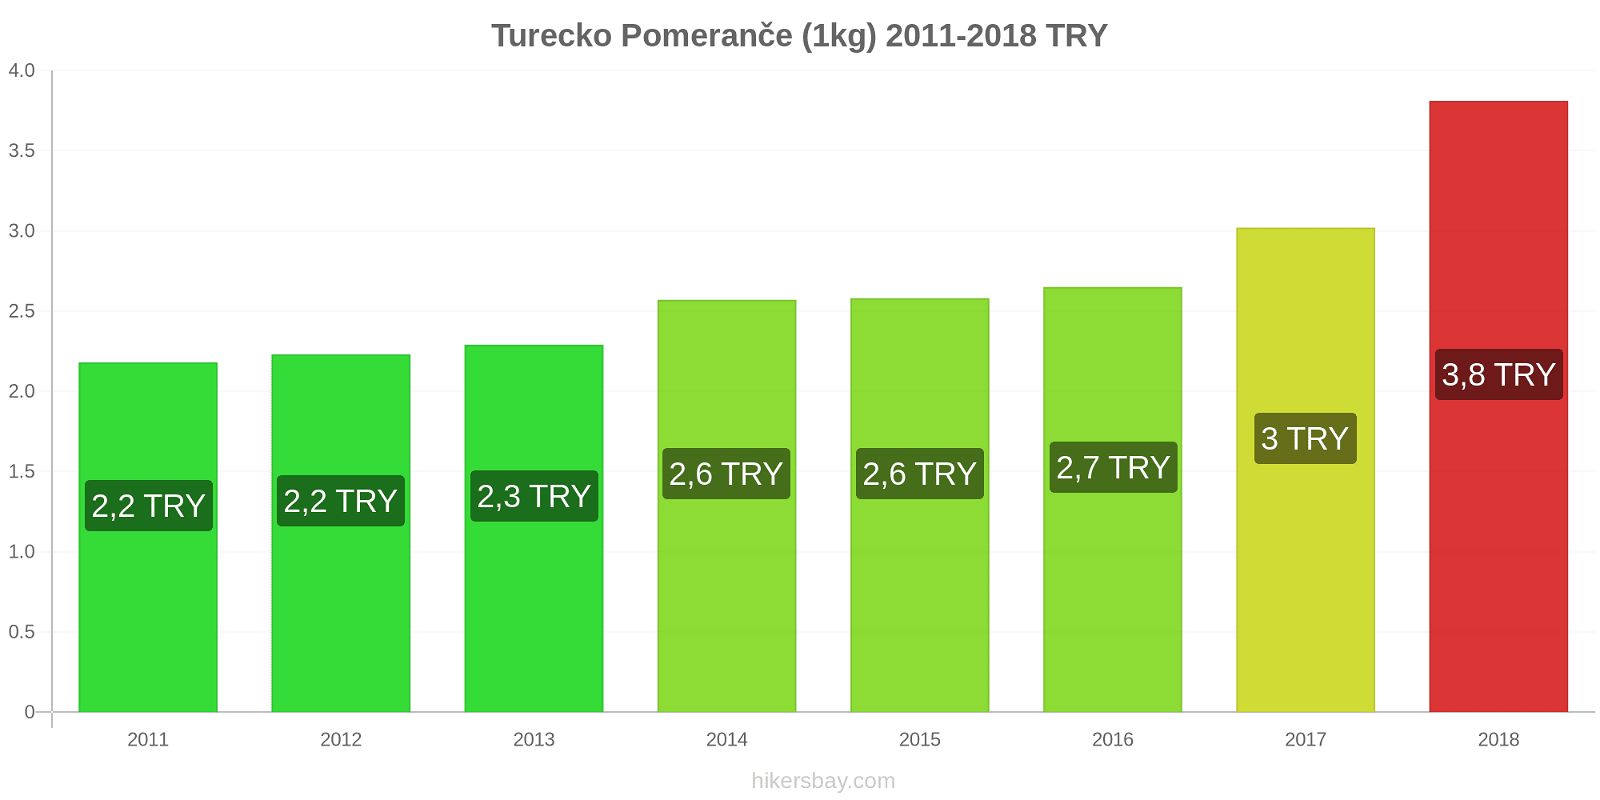 Turecko změny cen Pomeranče (1kg) hikersbay.com